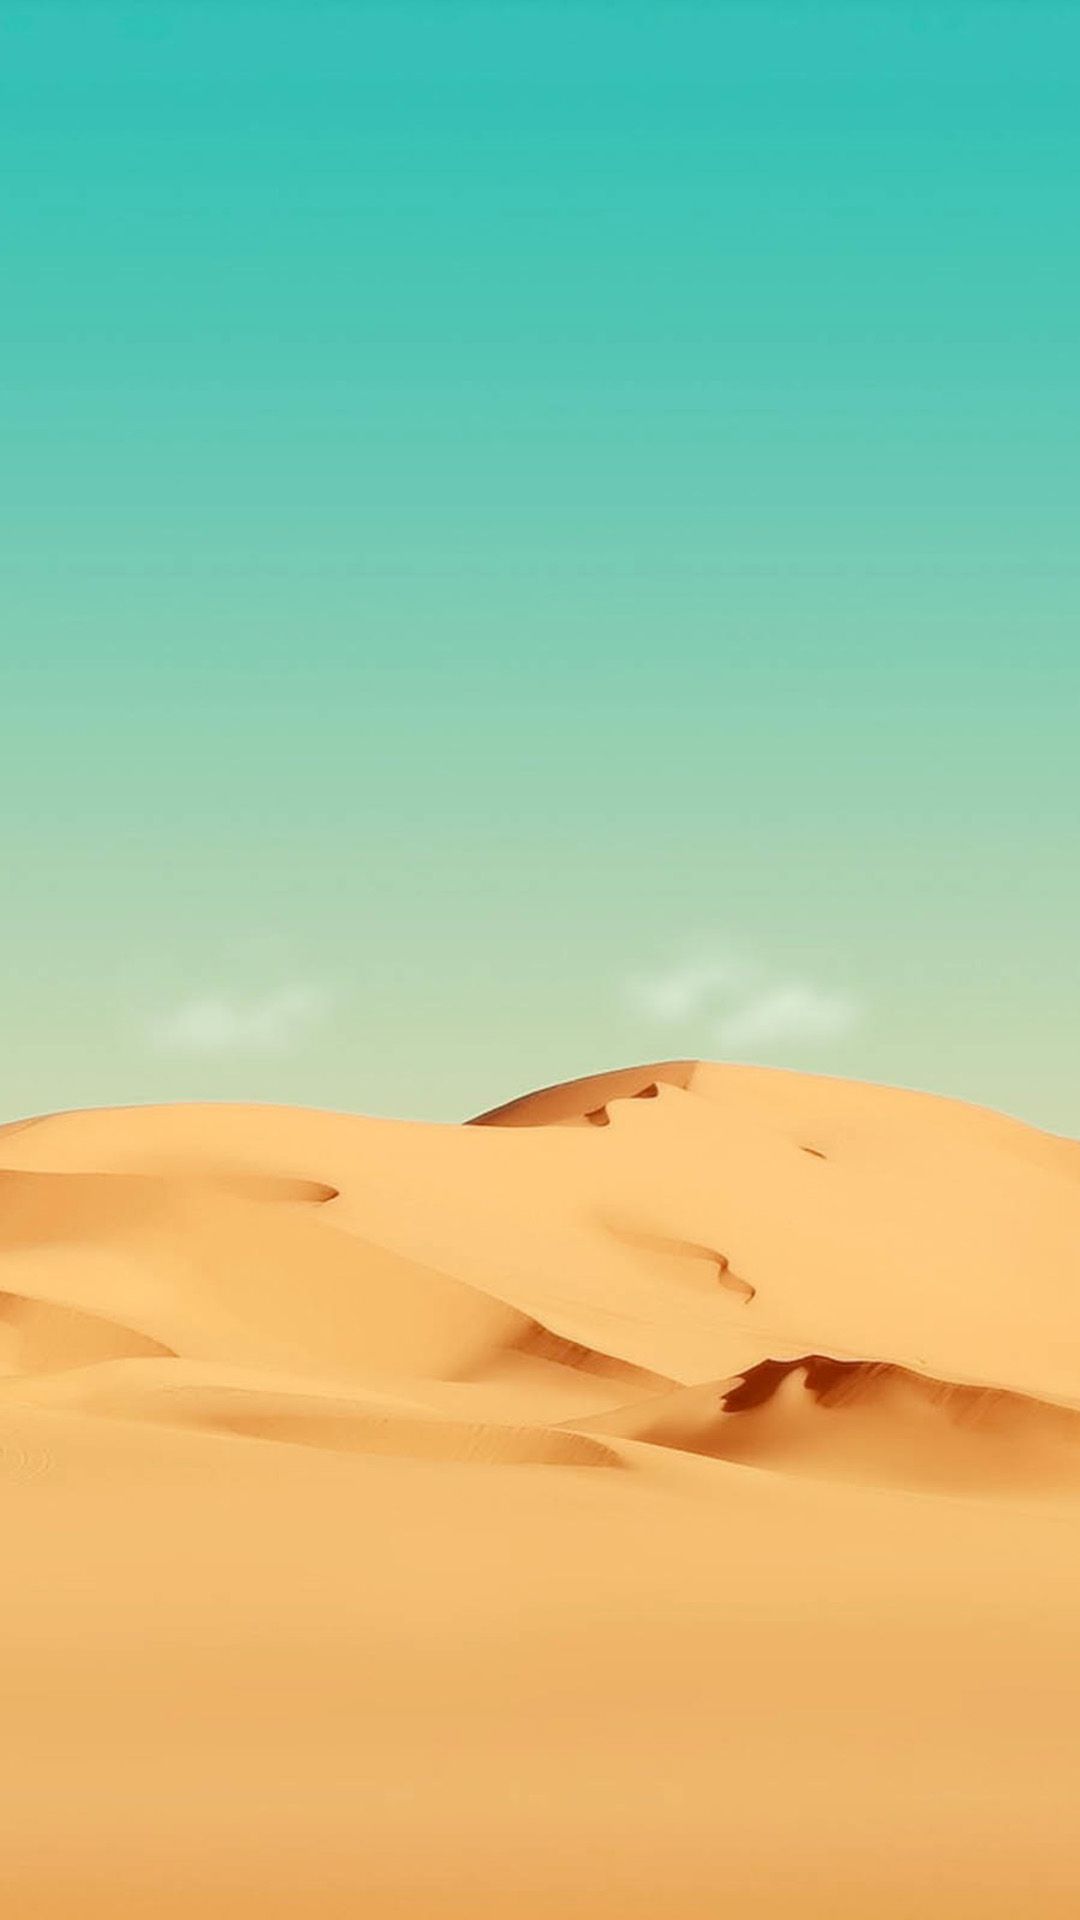 mejor fondo de pantalla del teléfono celular,desierto,ergio,arena,sáhara,cielo